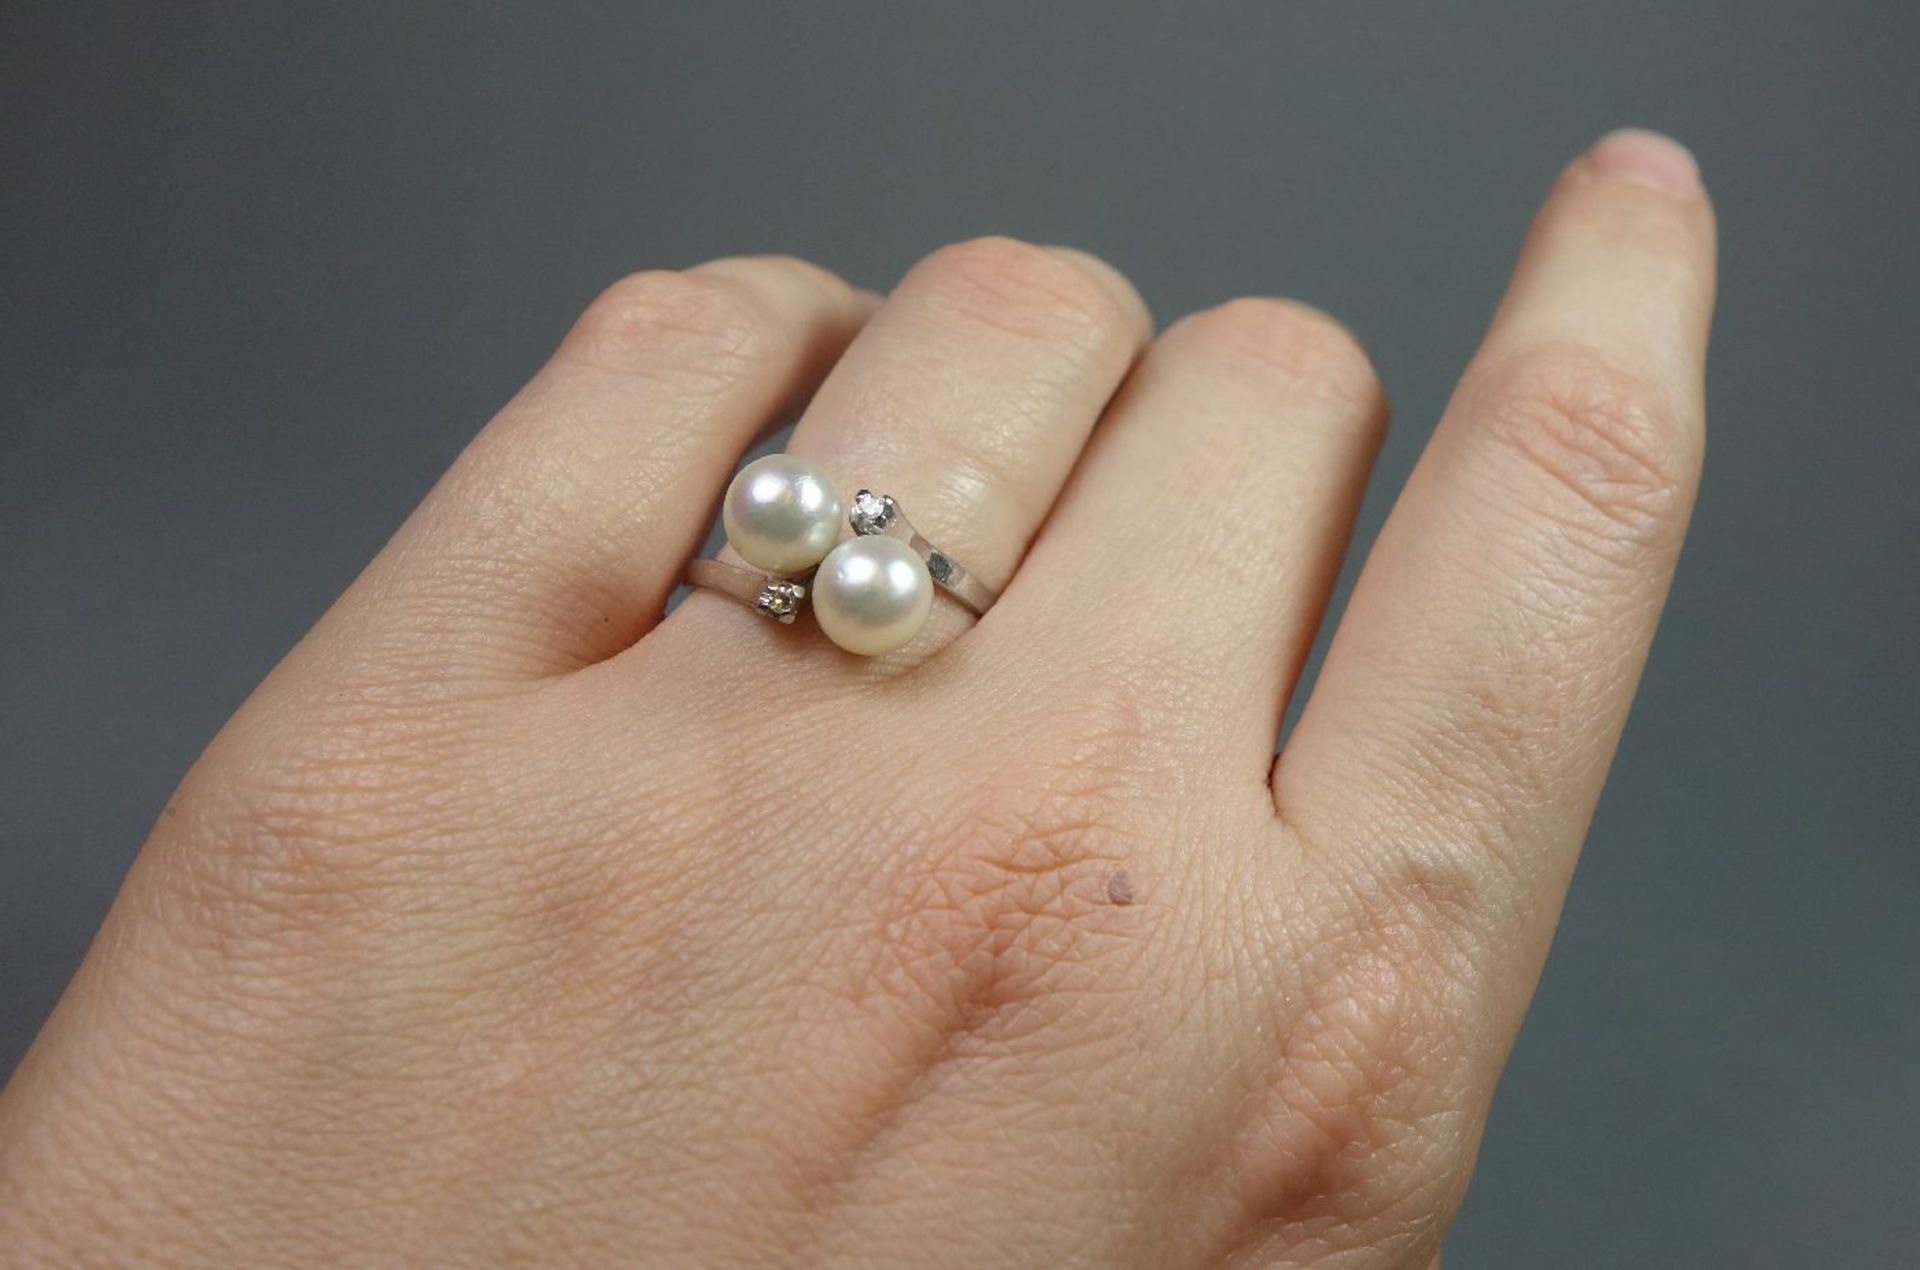 RING, 750er Weissgold (3,6 g), besetzt mit 2 Perlen (D. 6 mm) und zwei kleinen Brillanten. Ring-Gr. - Bild 5 aus 5